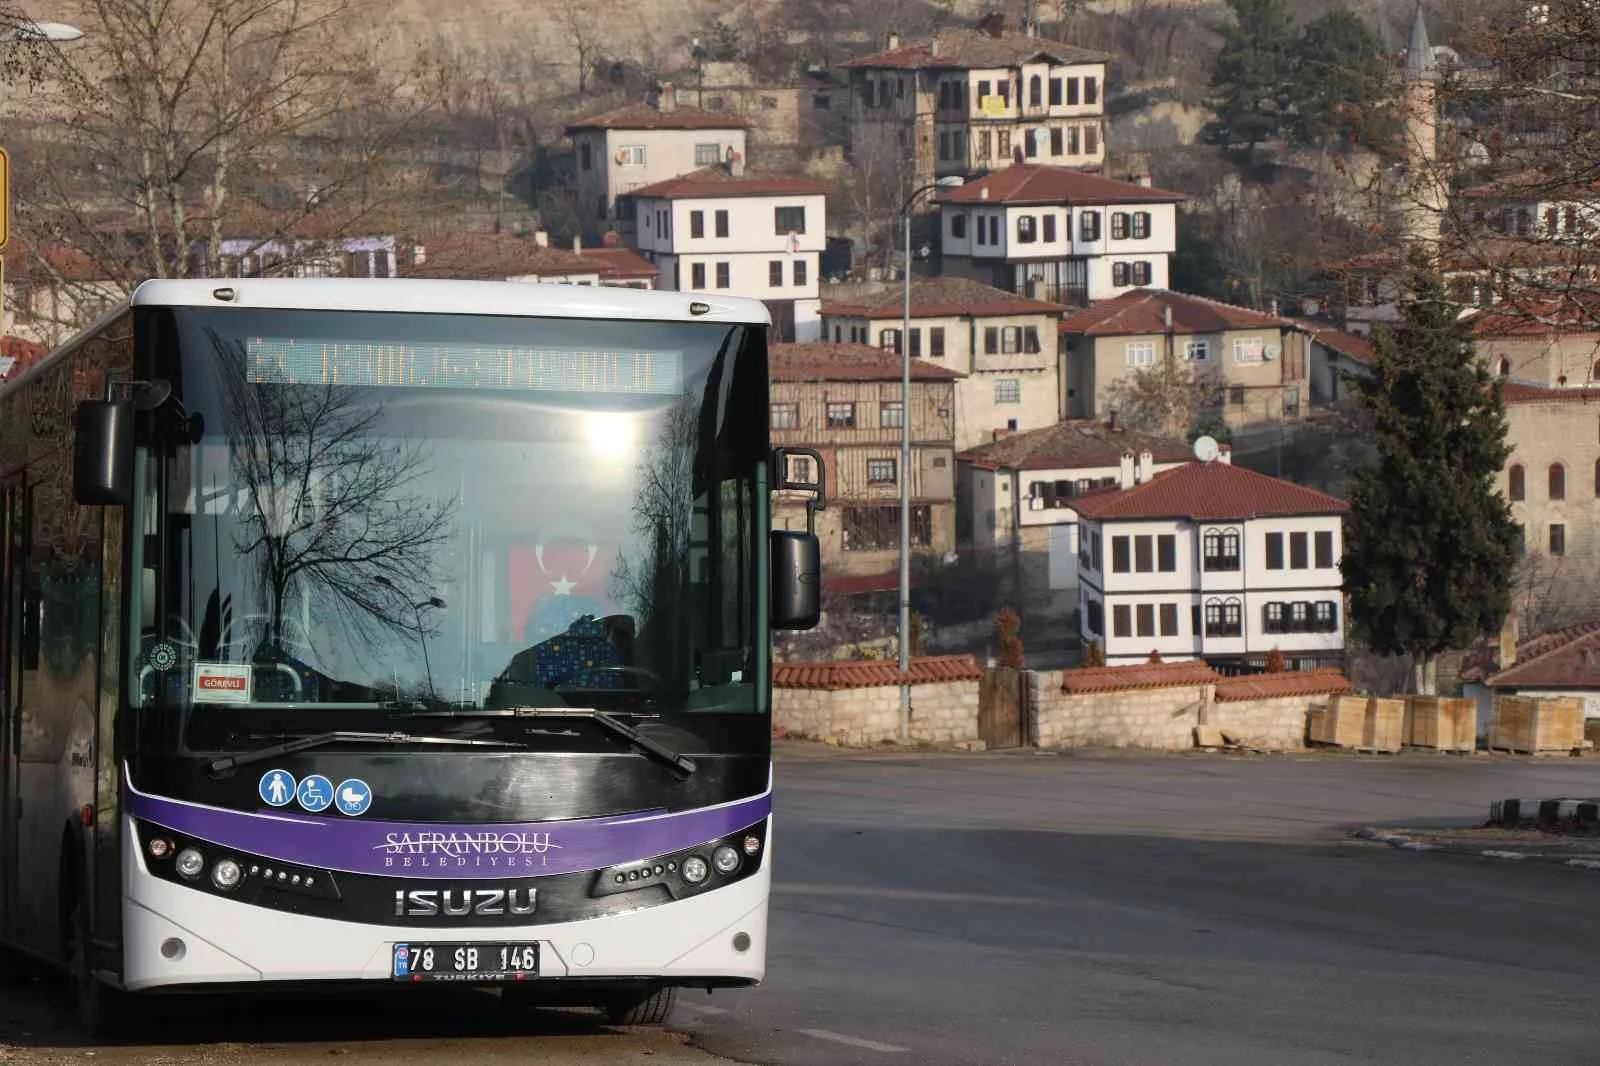 Safranboluda halk otobüsü sayısı 9a çıkarıldı